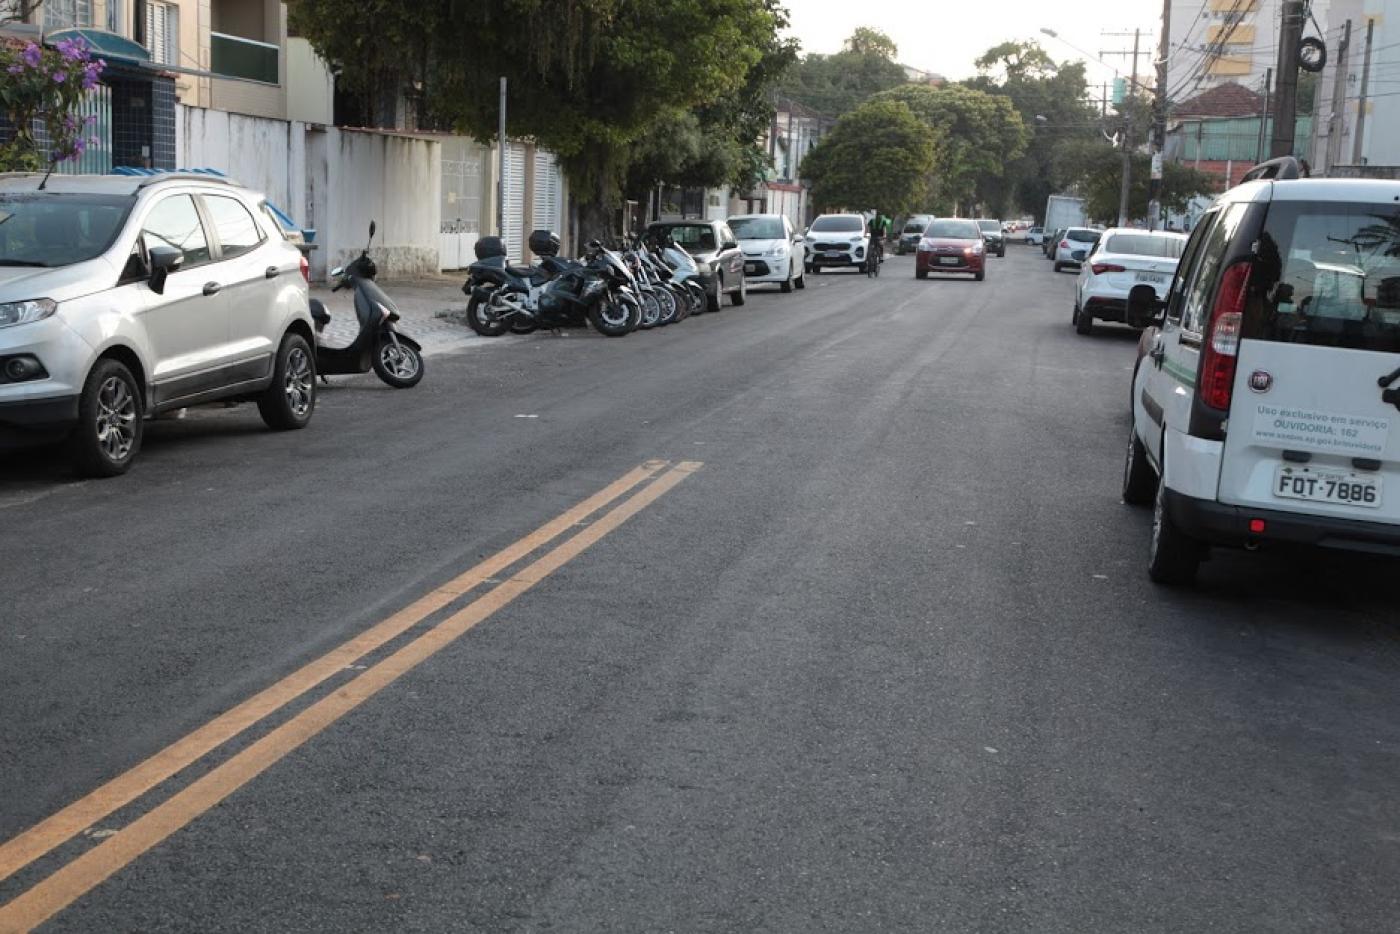 trecho de rua com asfalto novo e pintura de solo. Carros estão estacionados dos dois lados. #paratodosverem